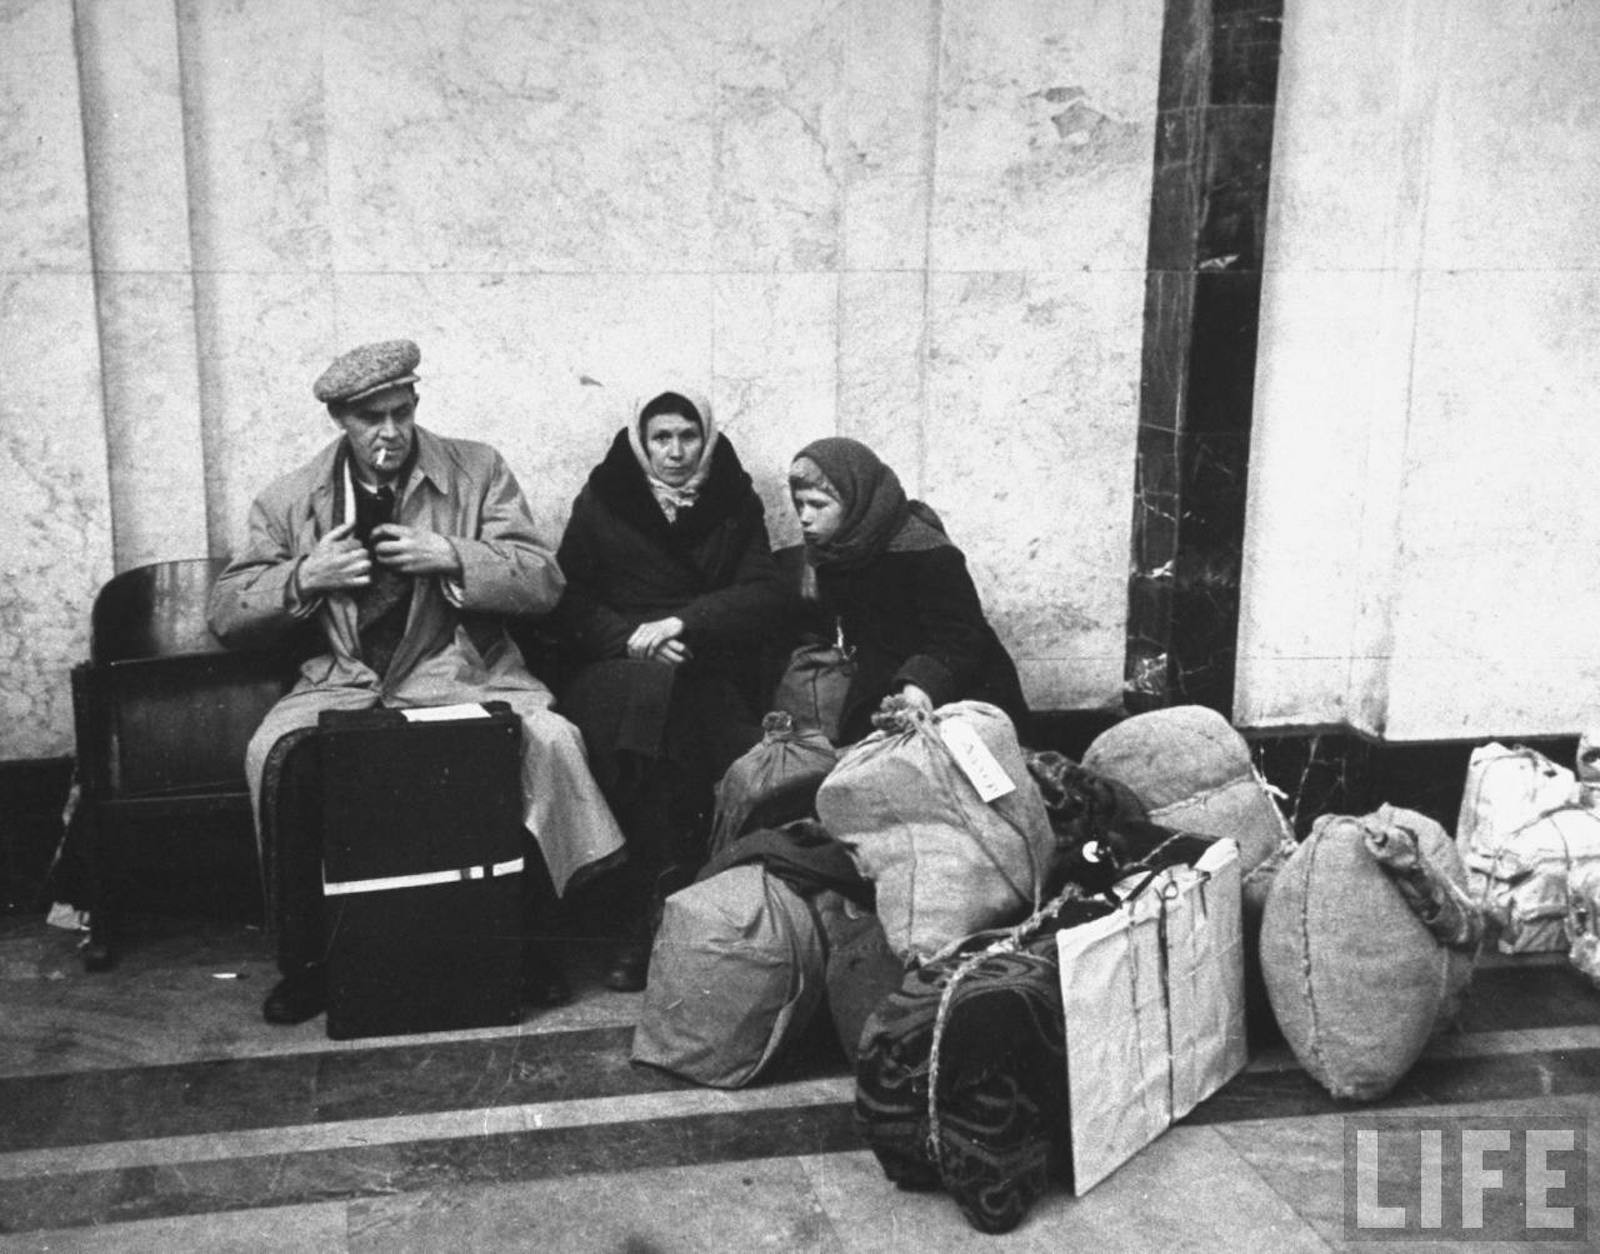 Тяжелая жизнь старых. Москва, 1947 год. Фотография Thomas d. MCAVOY. Life. Послевоенная жизнь в СССР. Послевоенная повседневность. Повседневность в годы войны.